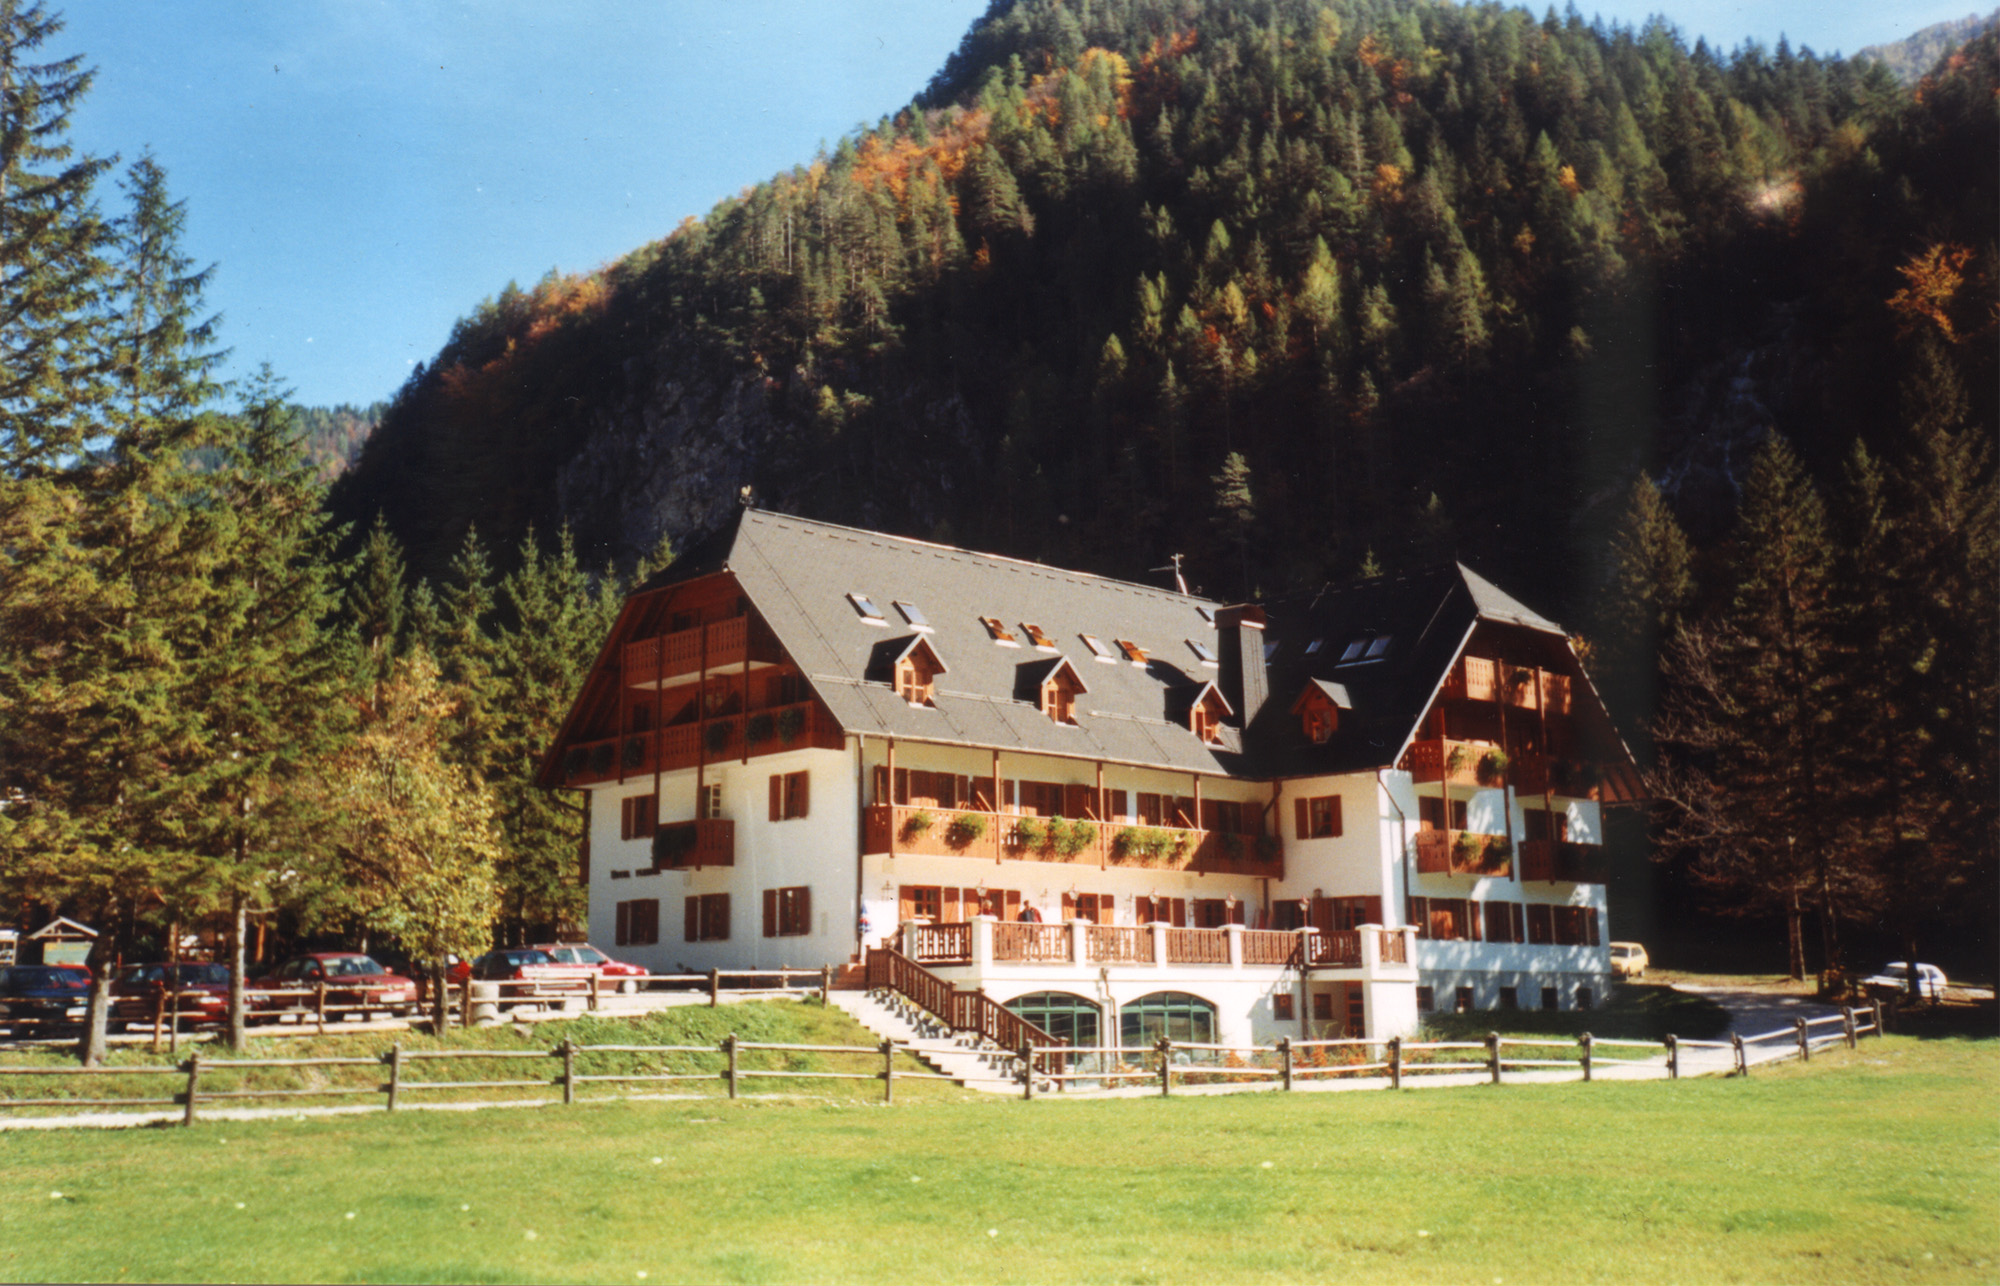 Hotel Plesnik in Logarska dolina